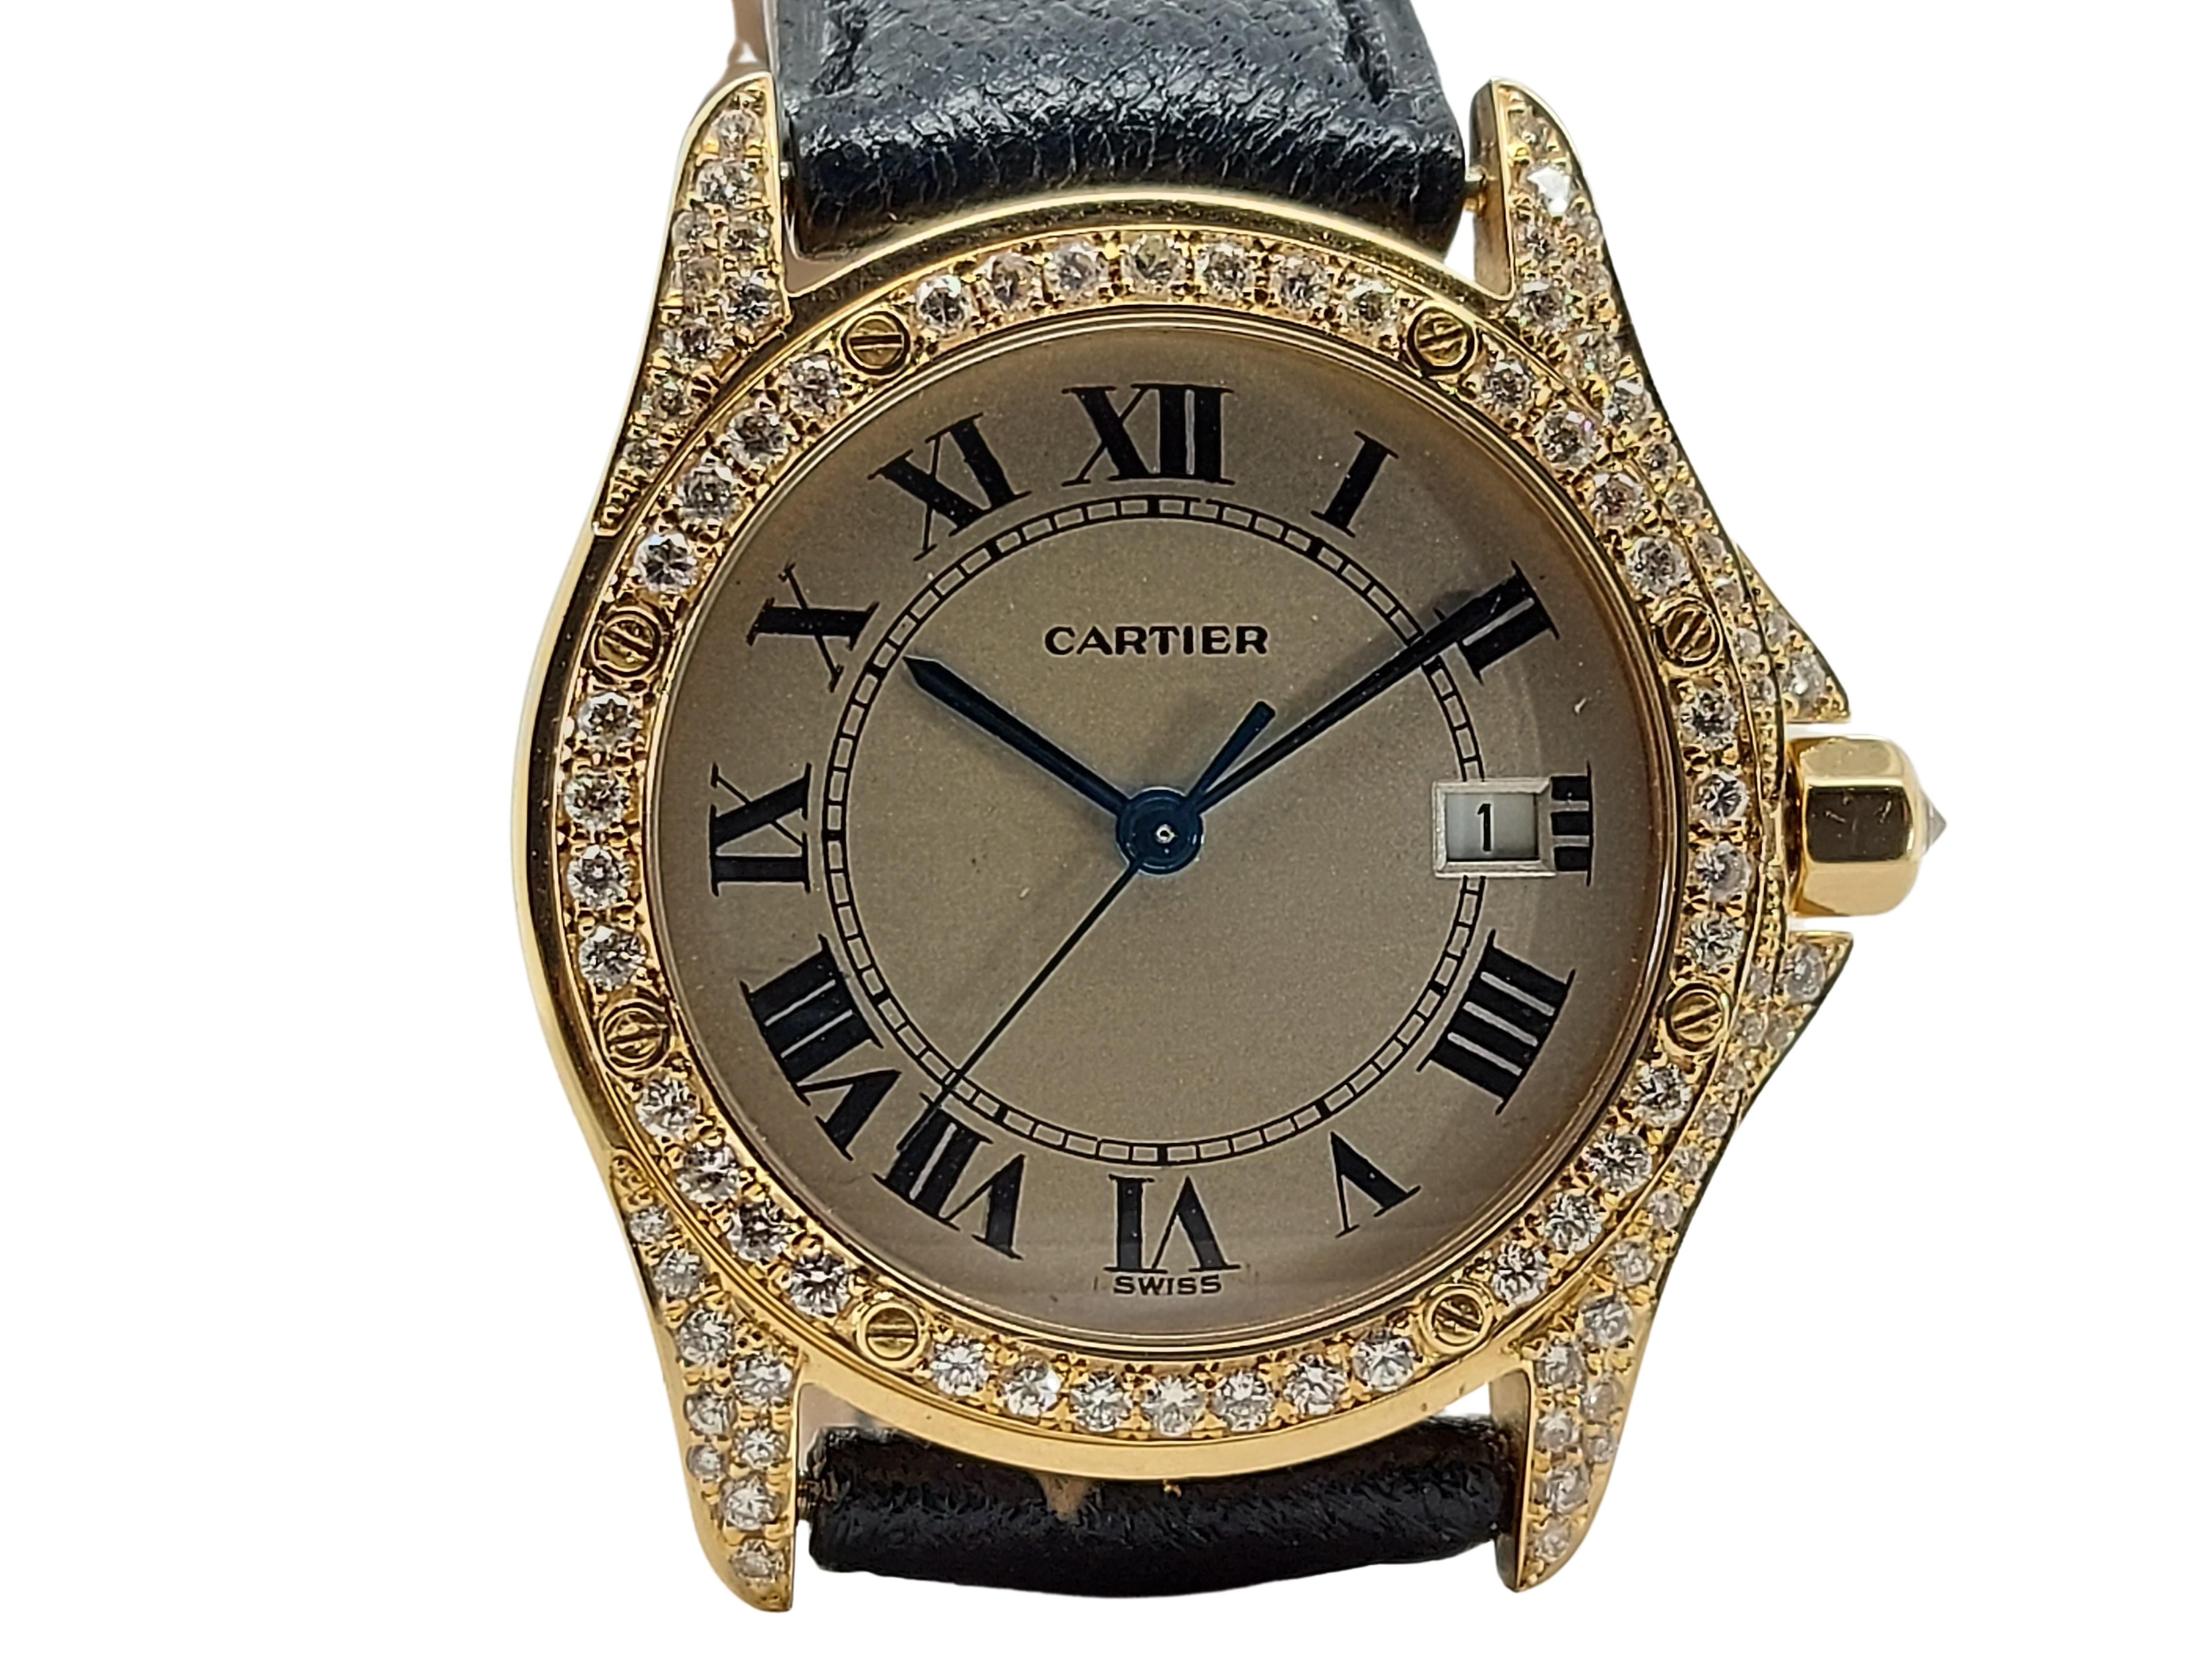 Brilliant Cut Cartier Cougar Wristwatch, 18 Karat Yellow Gold, Diamond Bezel, Quartz